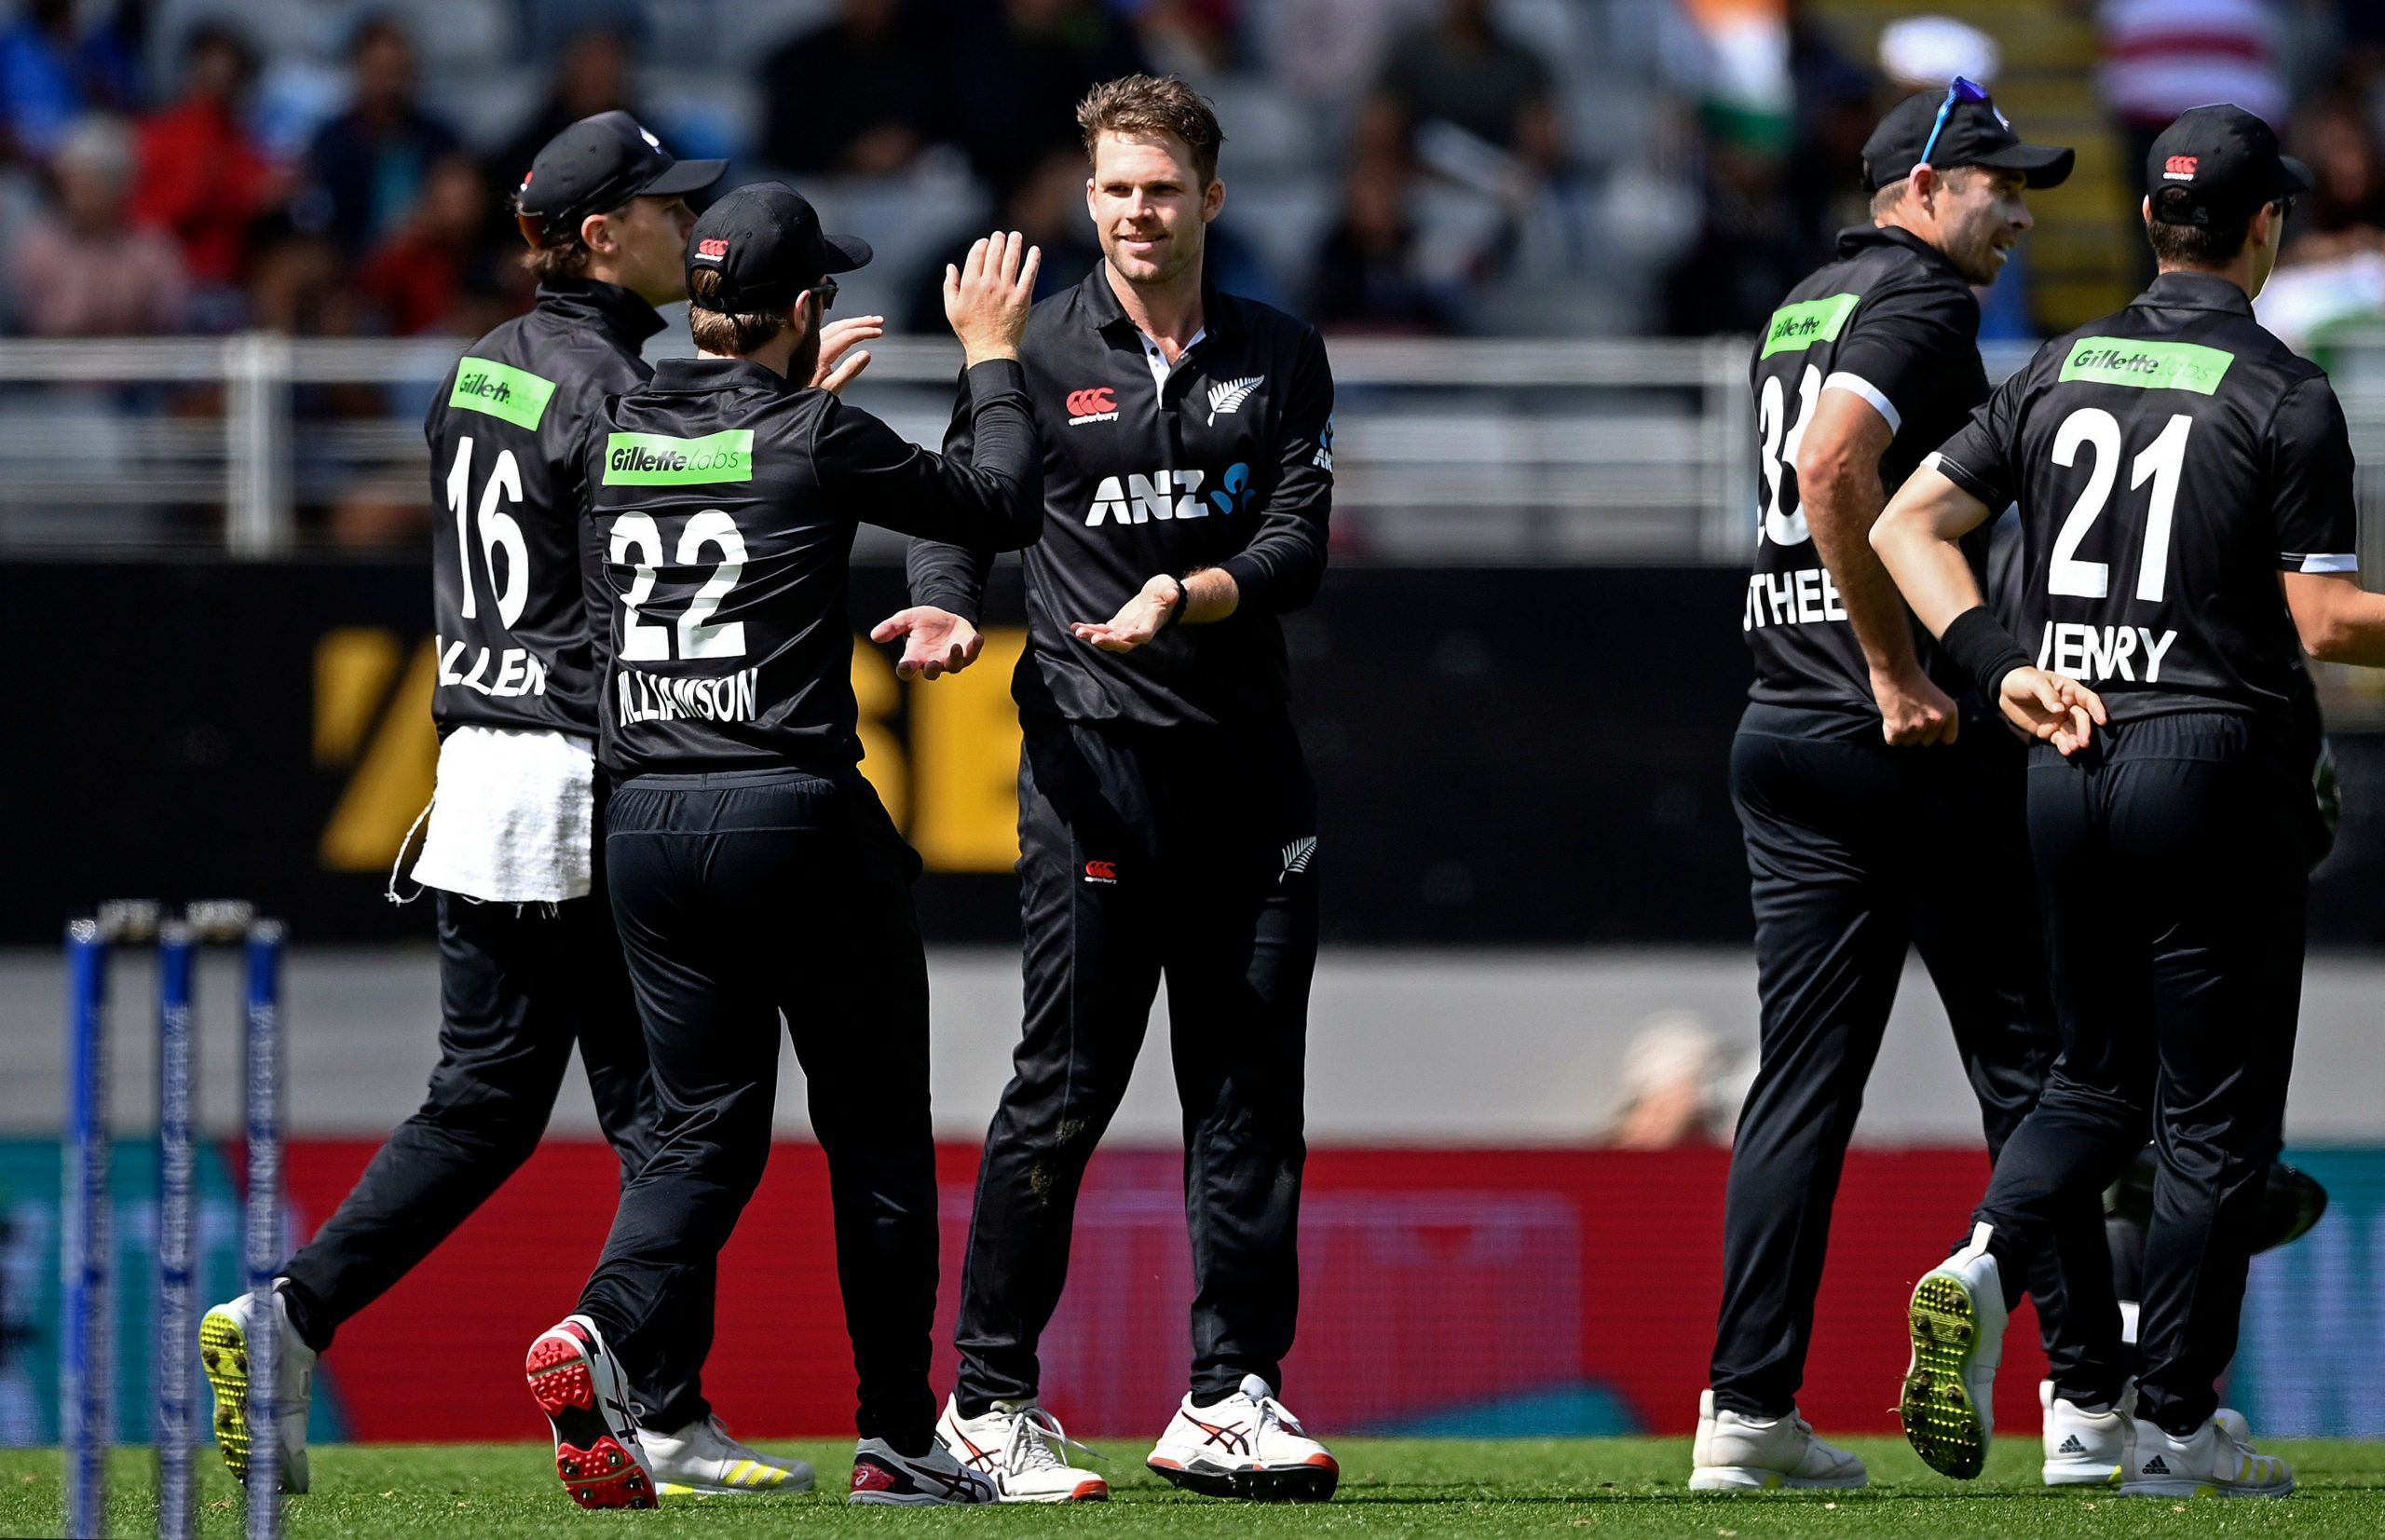 Ind vs NZ: पहले वनडे में न्यूजीलैंड की जीत, विलियमसन-लैथम की तूफानी बल्लेबाजी के सामने भारतीय गेंदबाजी पस्त